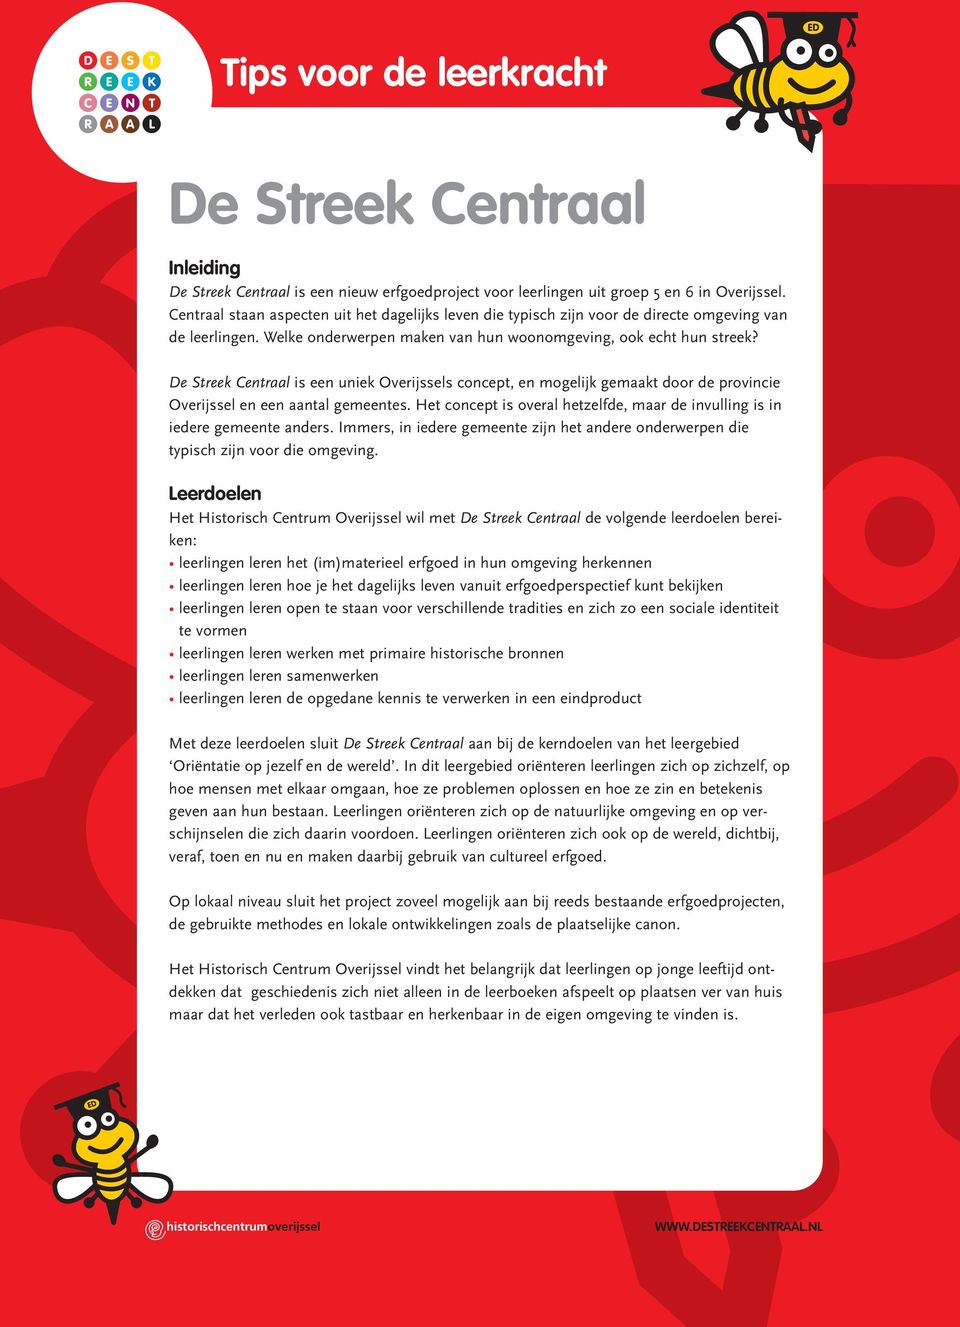 De Streek Centraal is een uniek Overijssels concept, en mogelijk gemaakt door de provincie Overijssel en een aantal gemeentes.